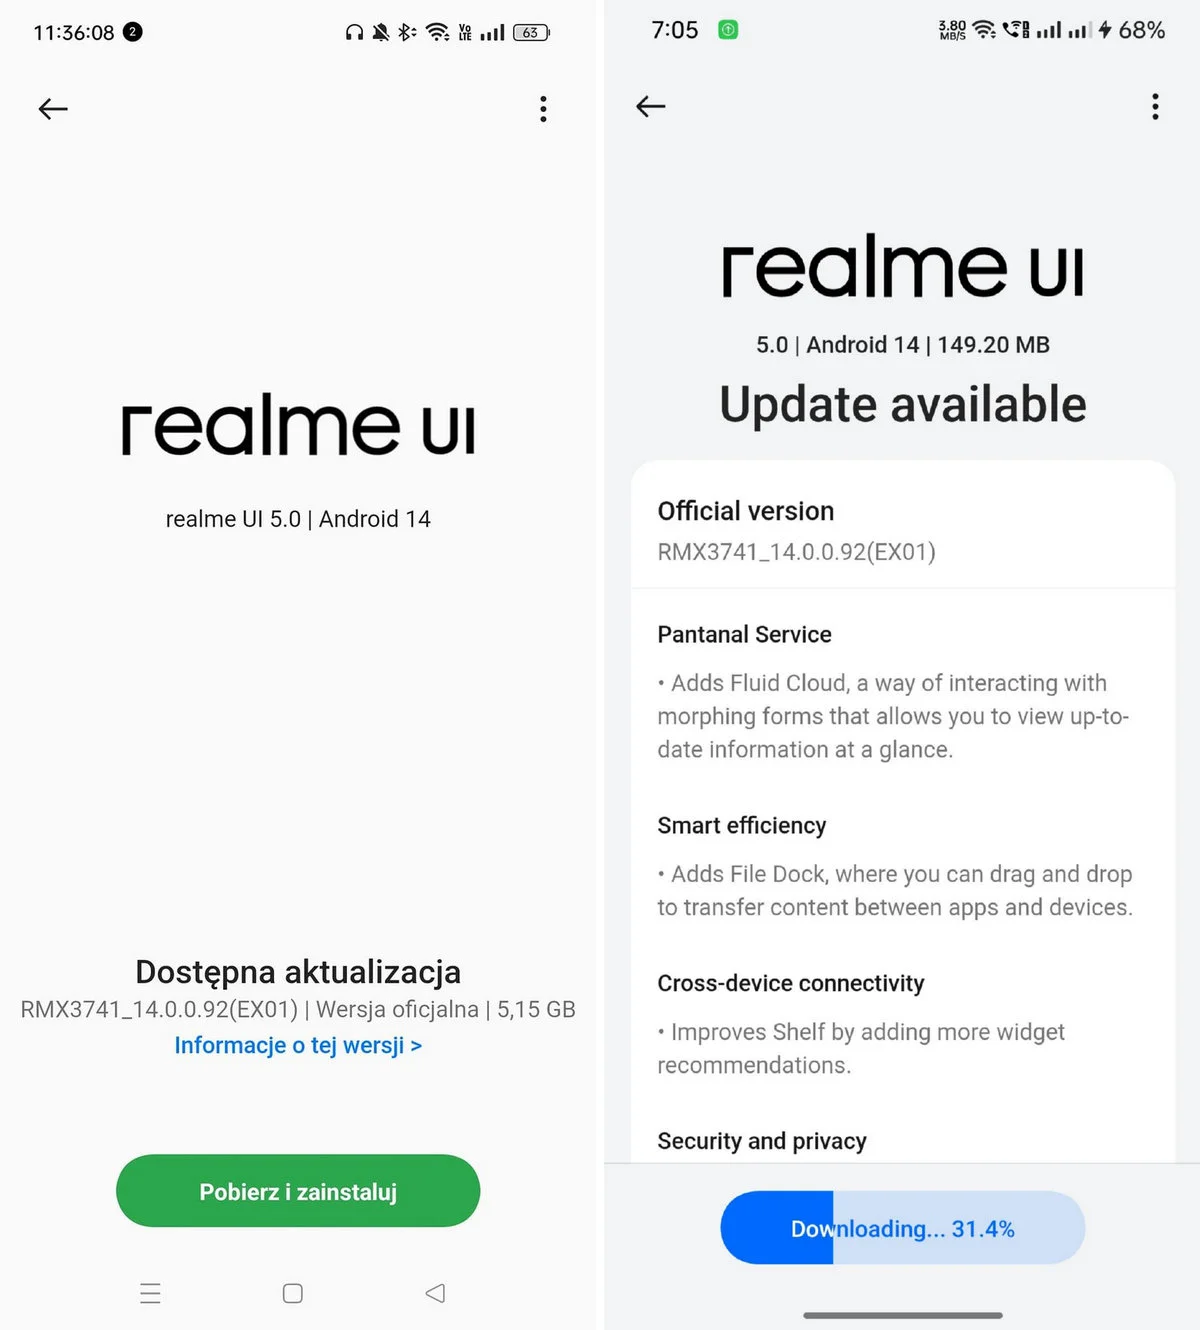 realme UI 5.0 i Android 14